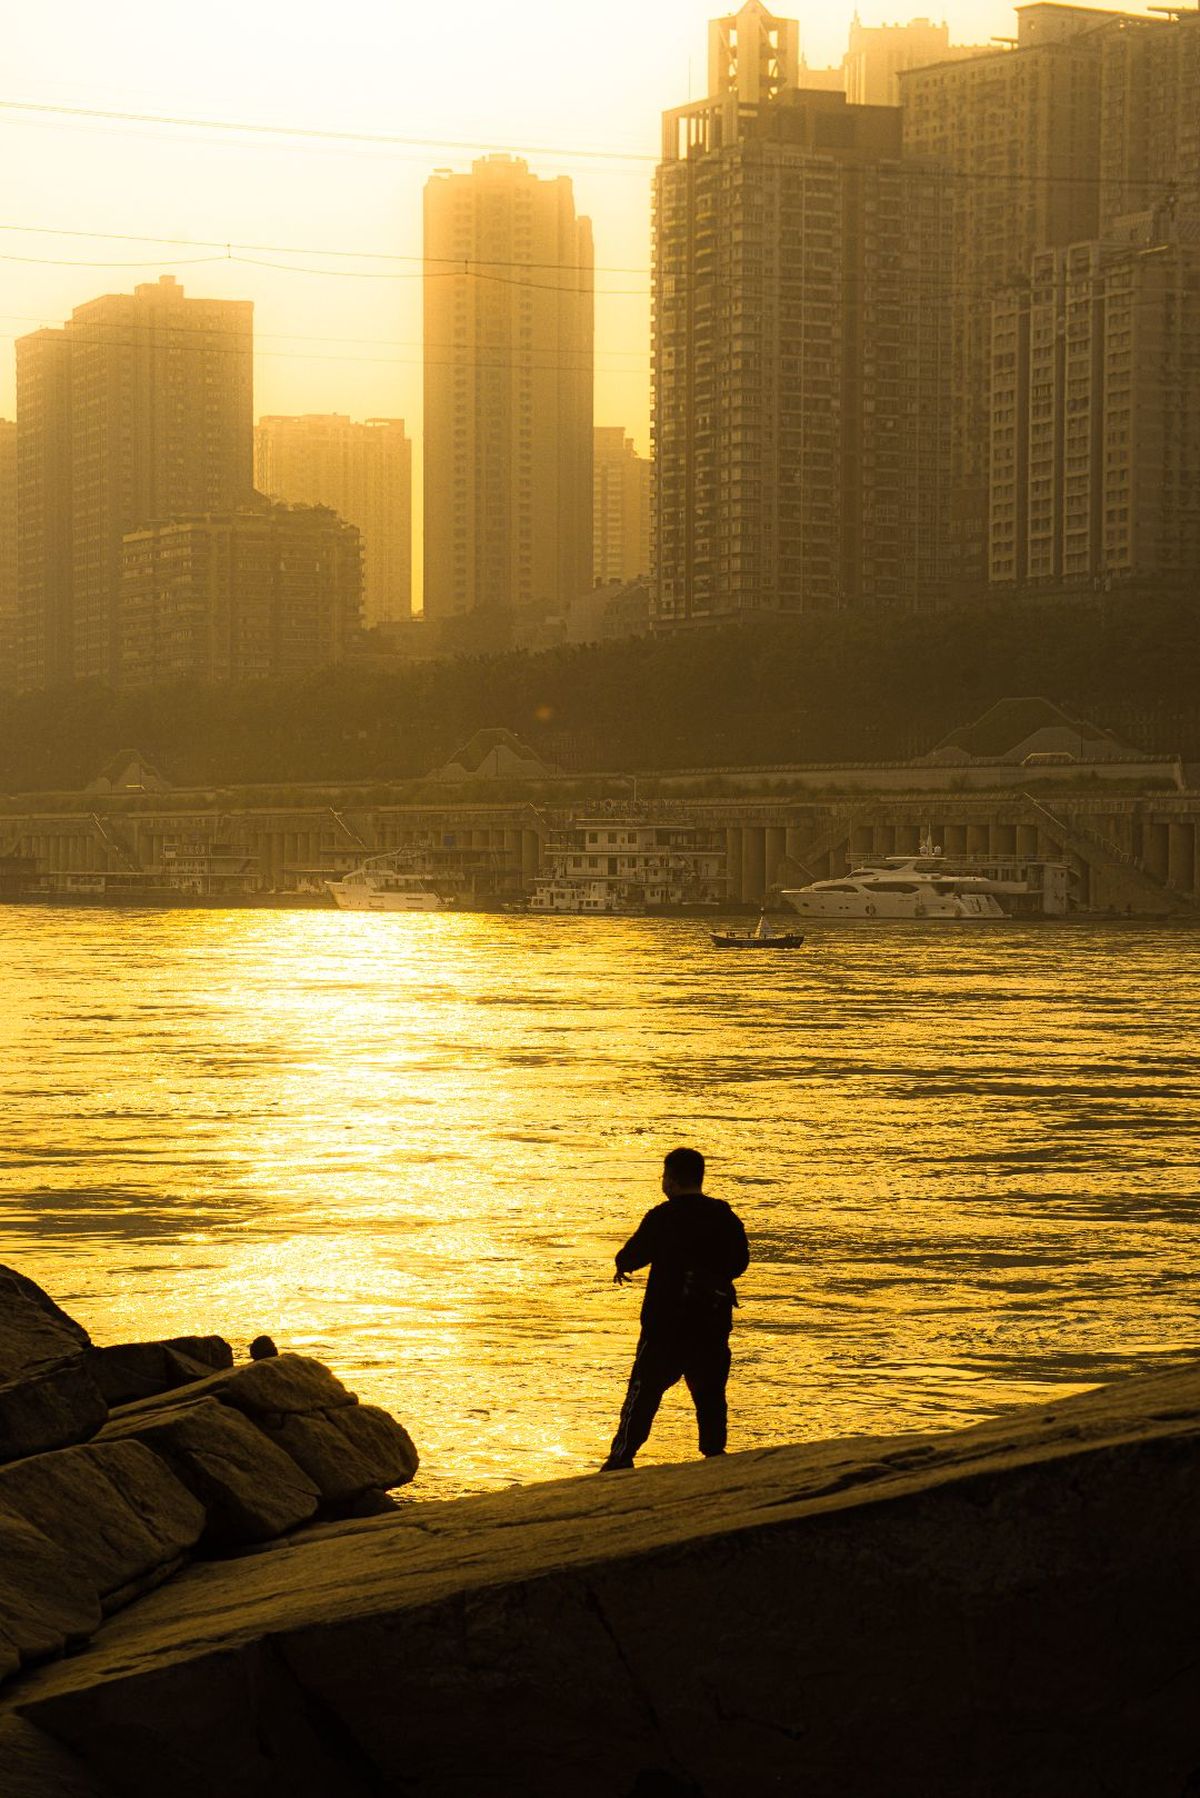 一个人沿着海滩走 背景是夕阳下的城市、水域和建筑物。